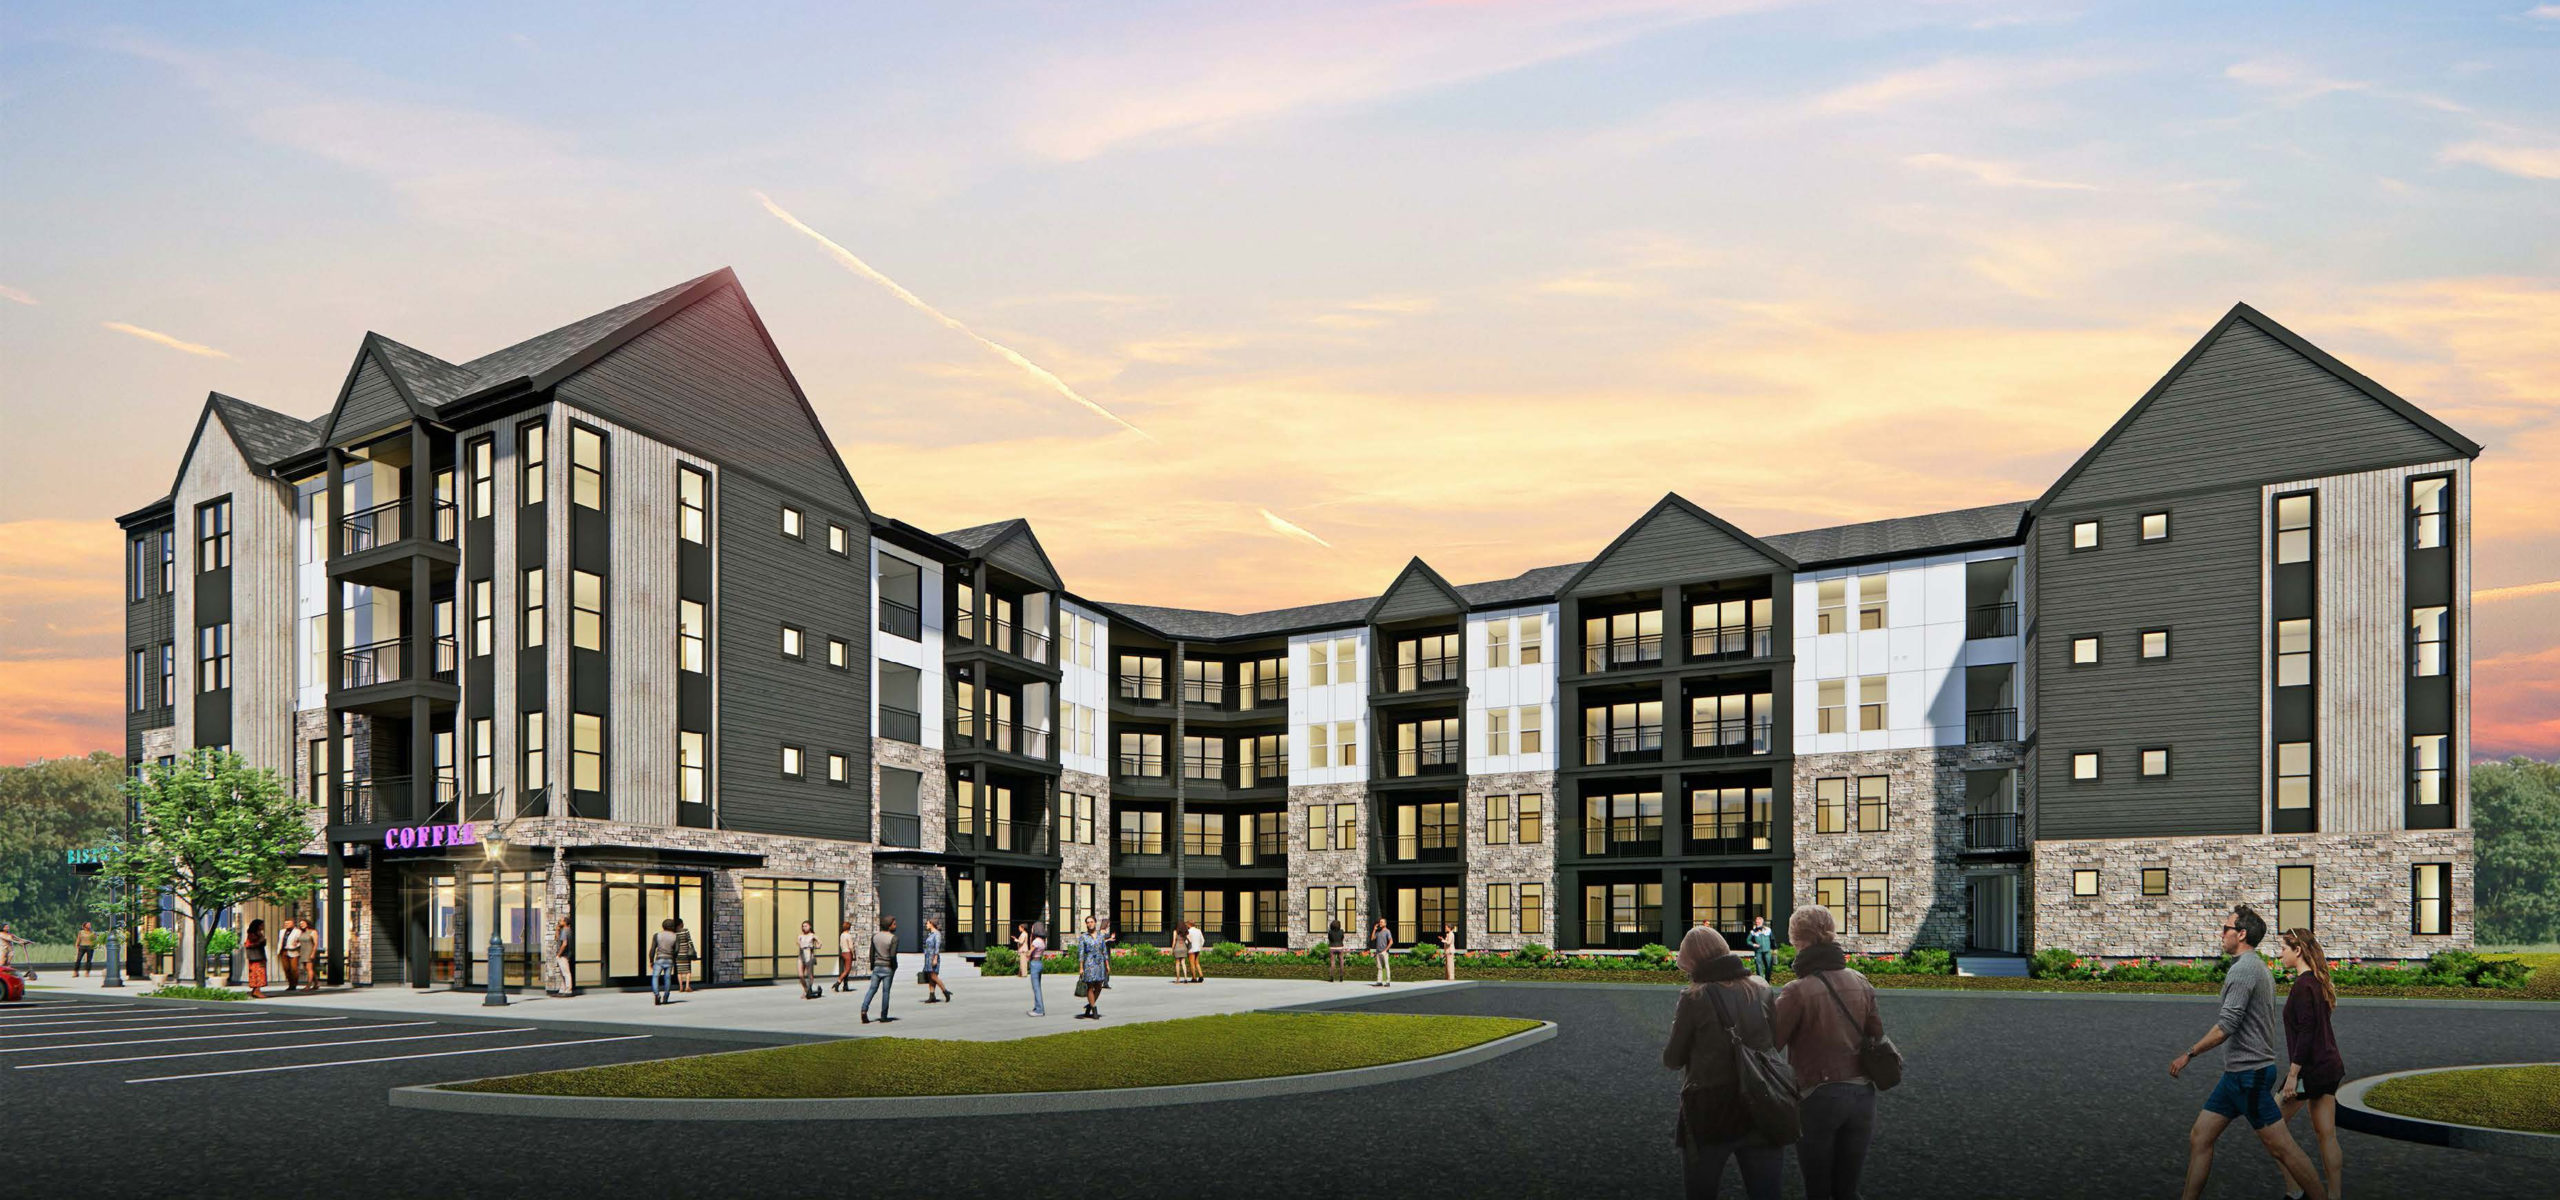 McShane to Build 288 Apartment Units in Fairburn, Georgia